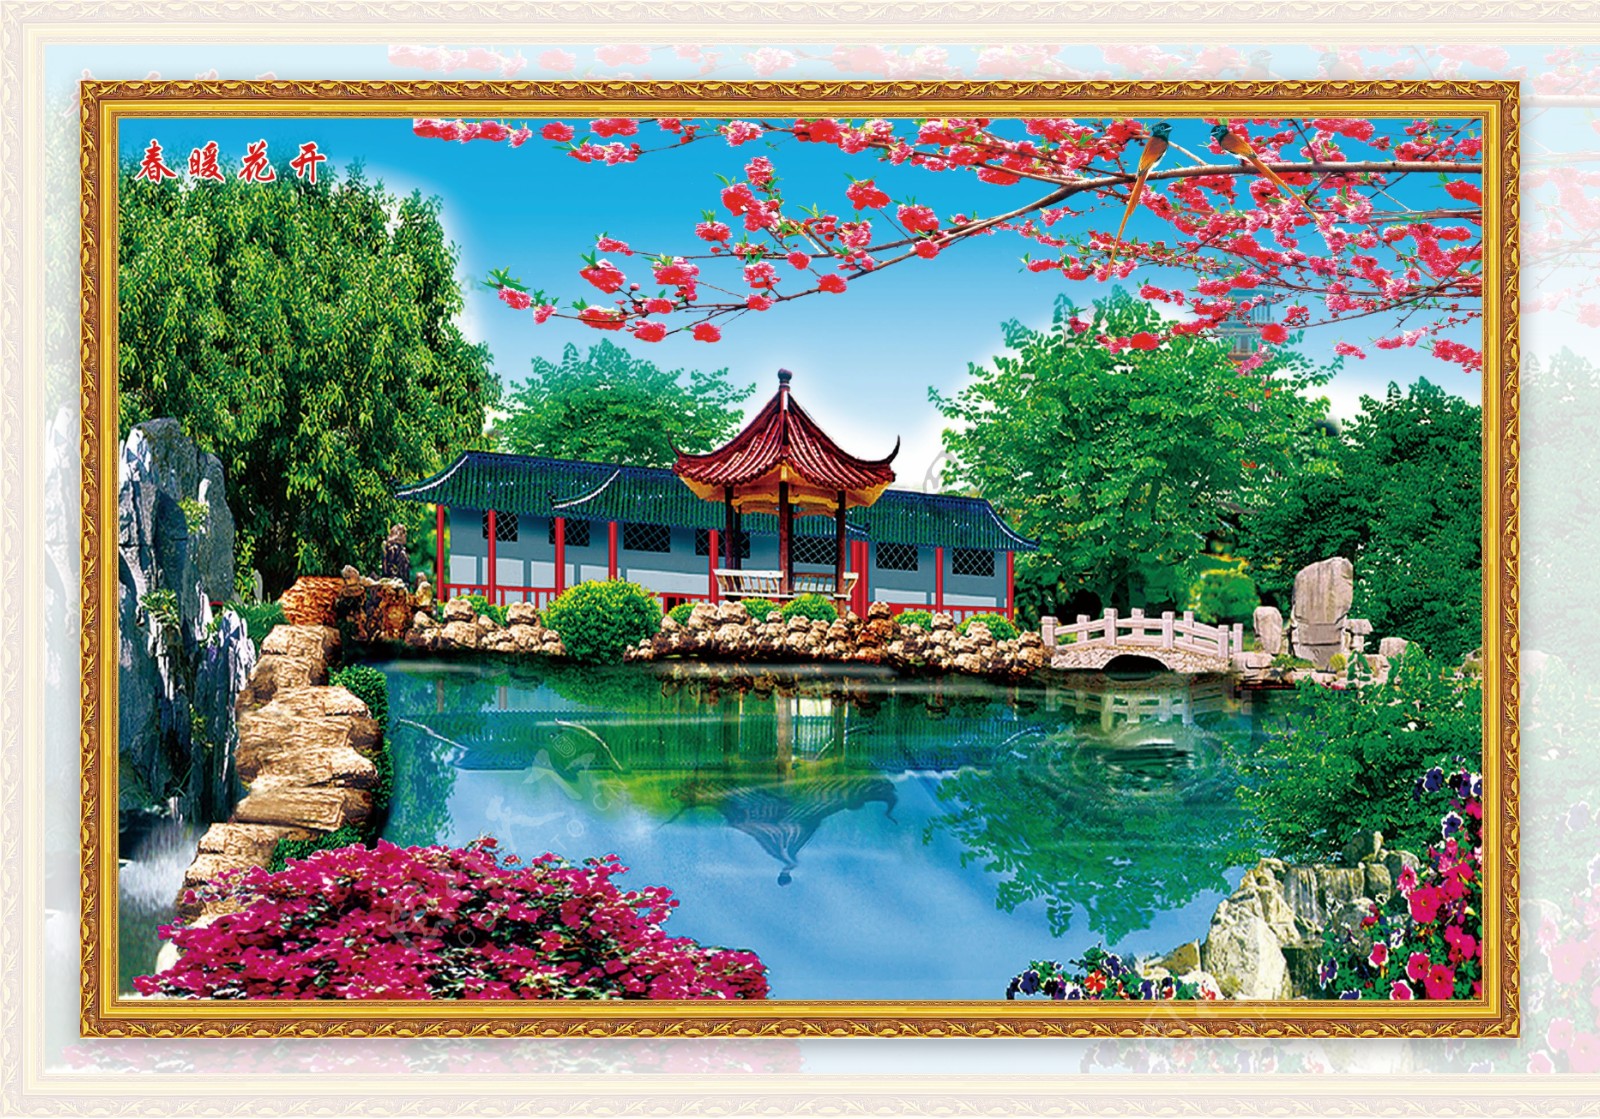 池塘庭院风景中堂画图片